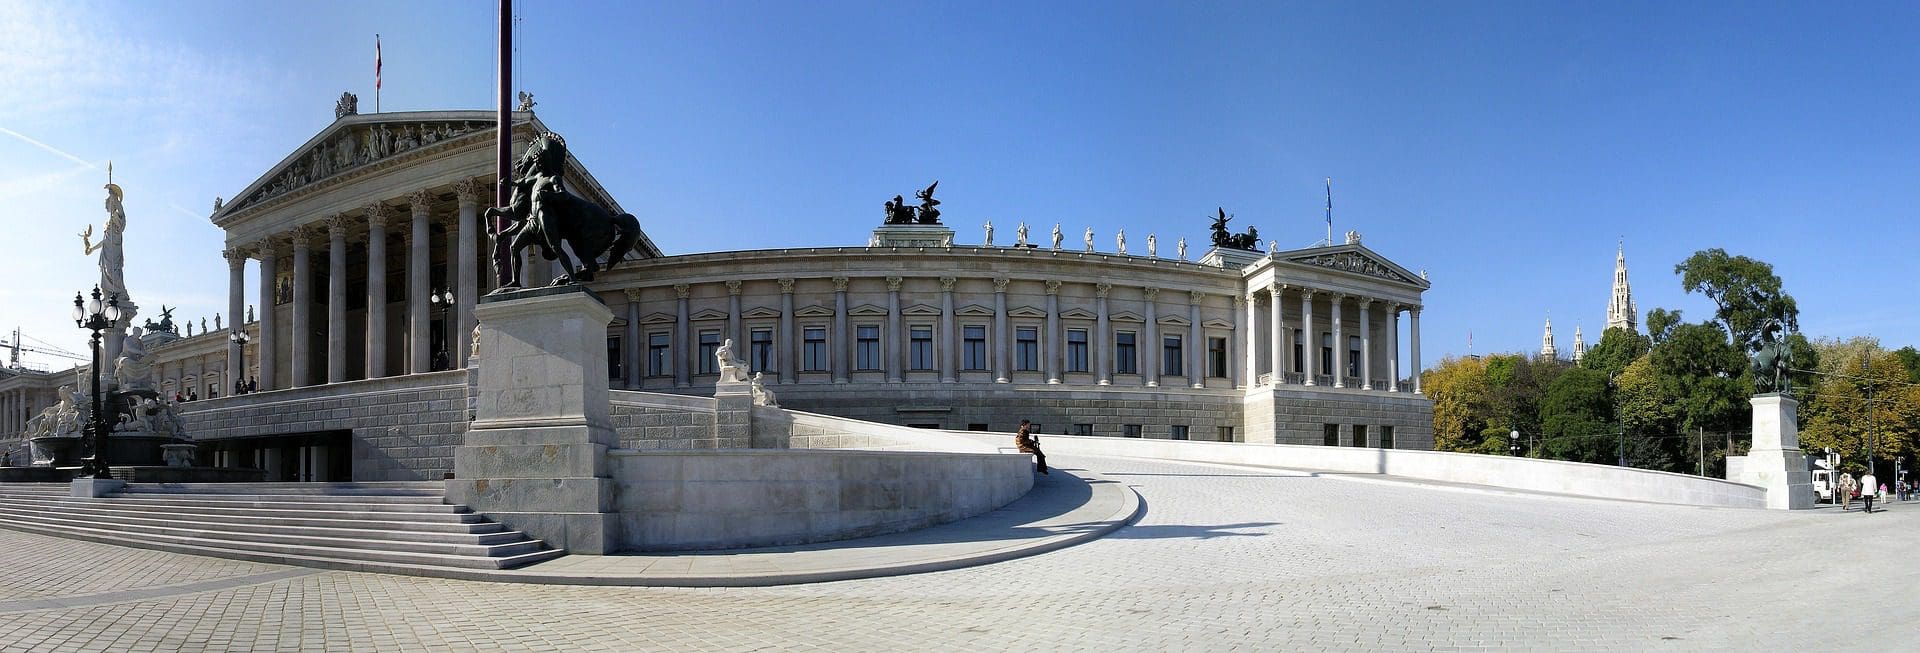 維也納議會大廈